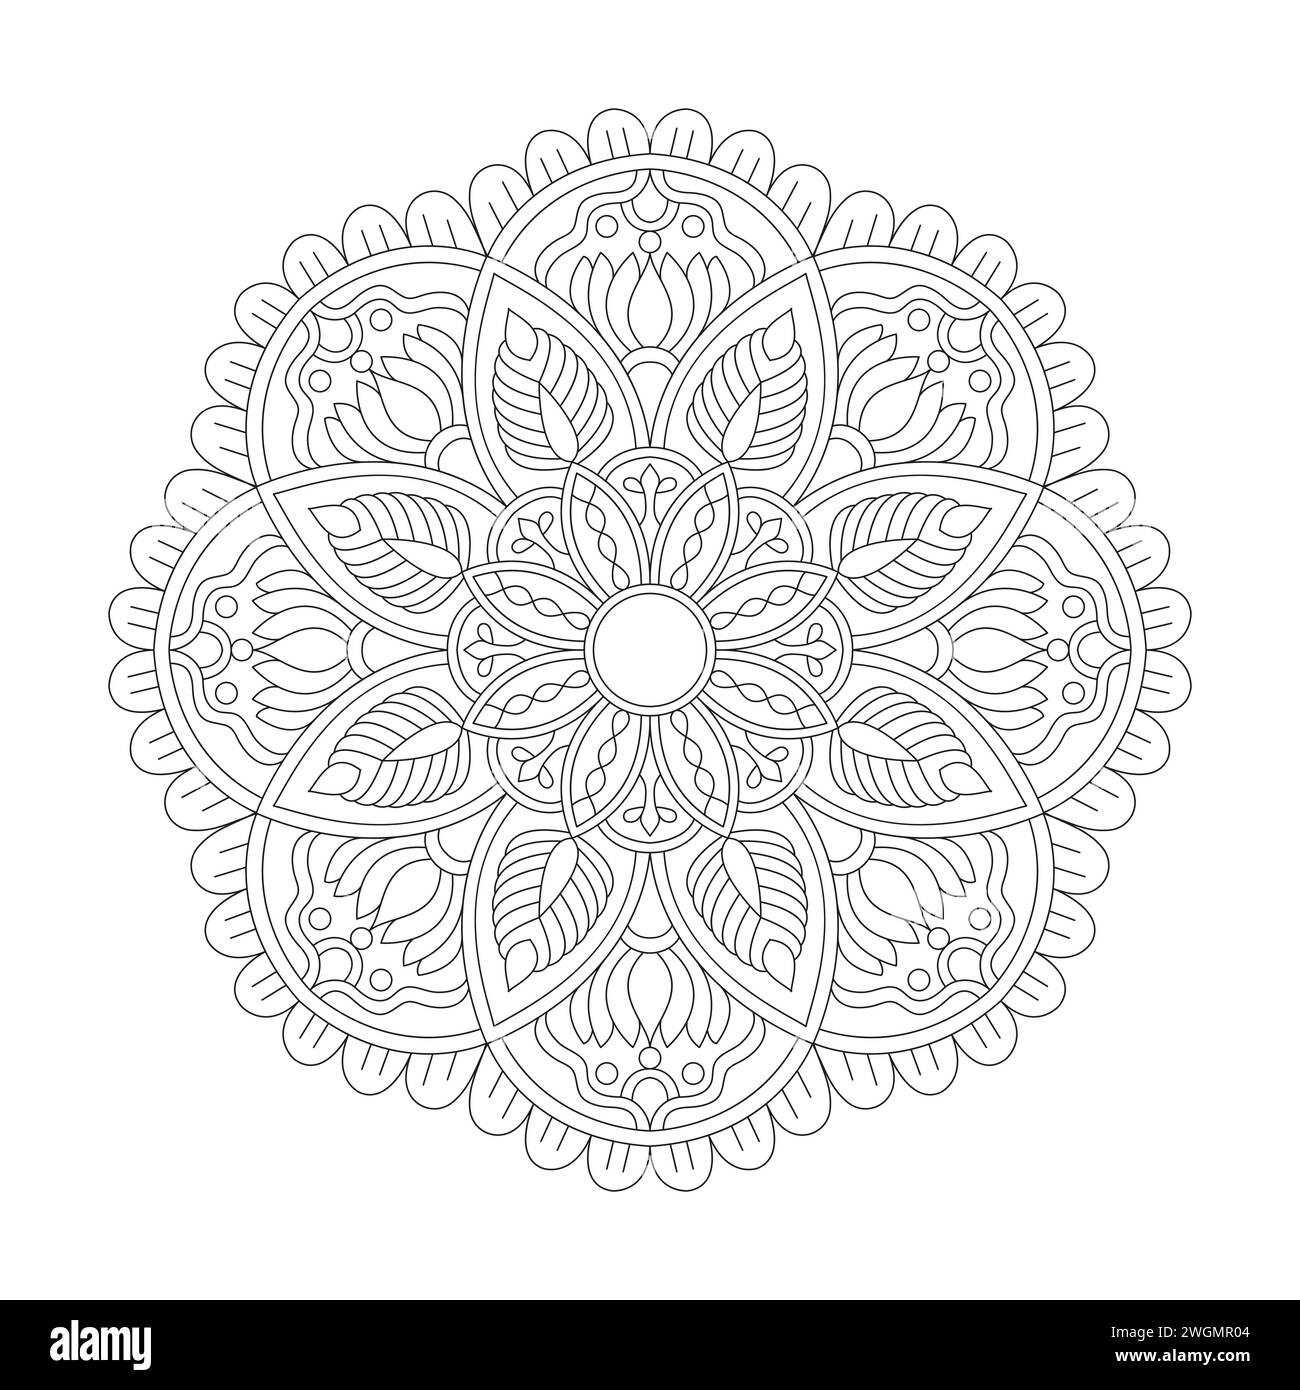 Mystischer Orname Mandala Coloring Book Page für kdp Book Interior. Friedliche Blütenblätter, Fähigkeit zum Entspannen, Gehirnerlebnisse, harmonischer Hafen, friedlicher Po Stock Vektor